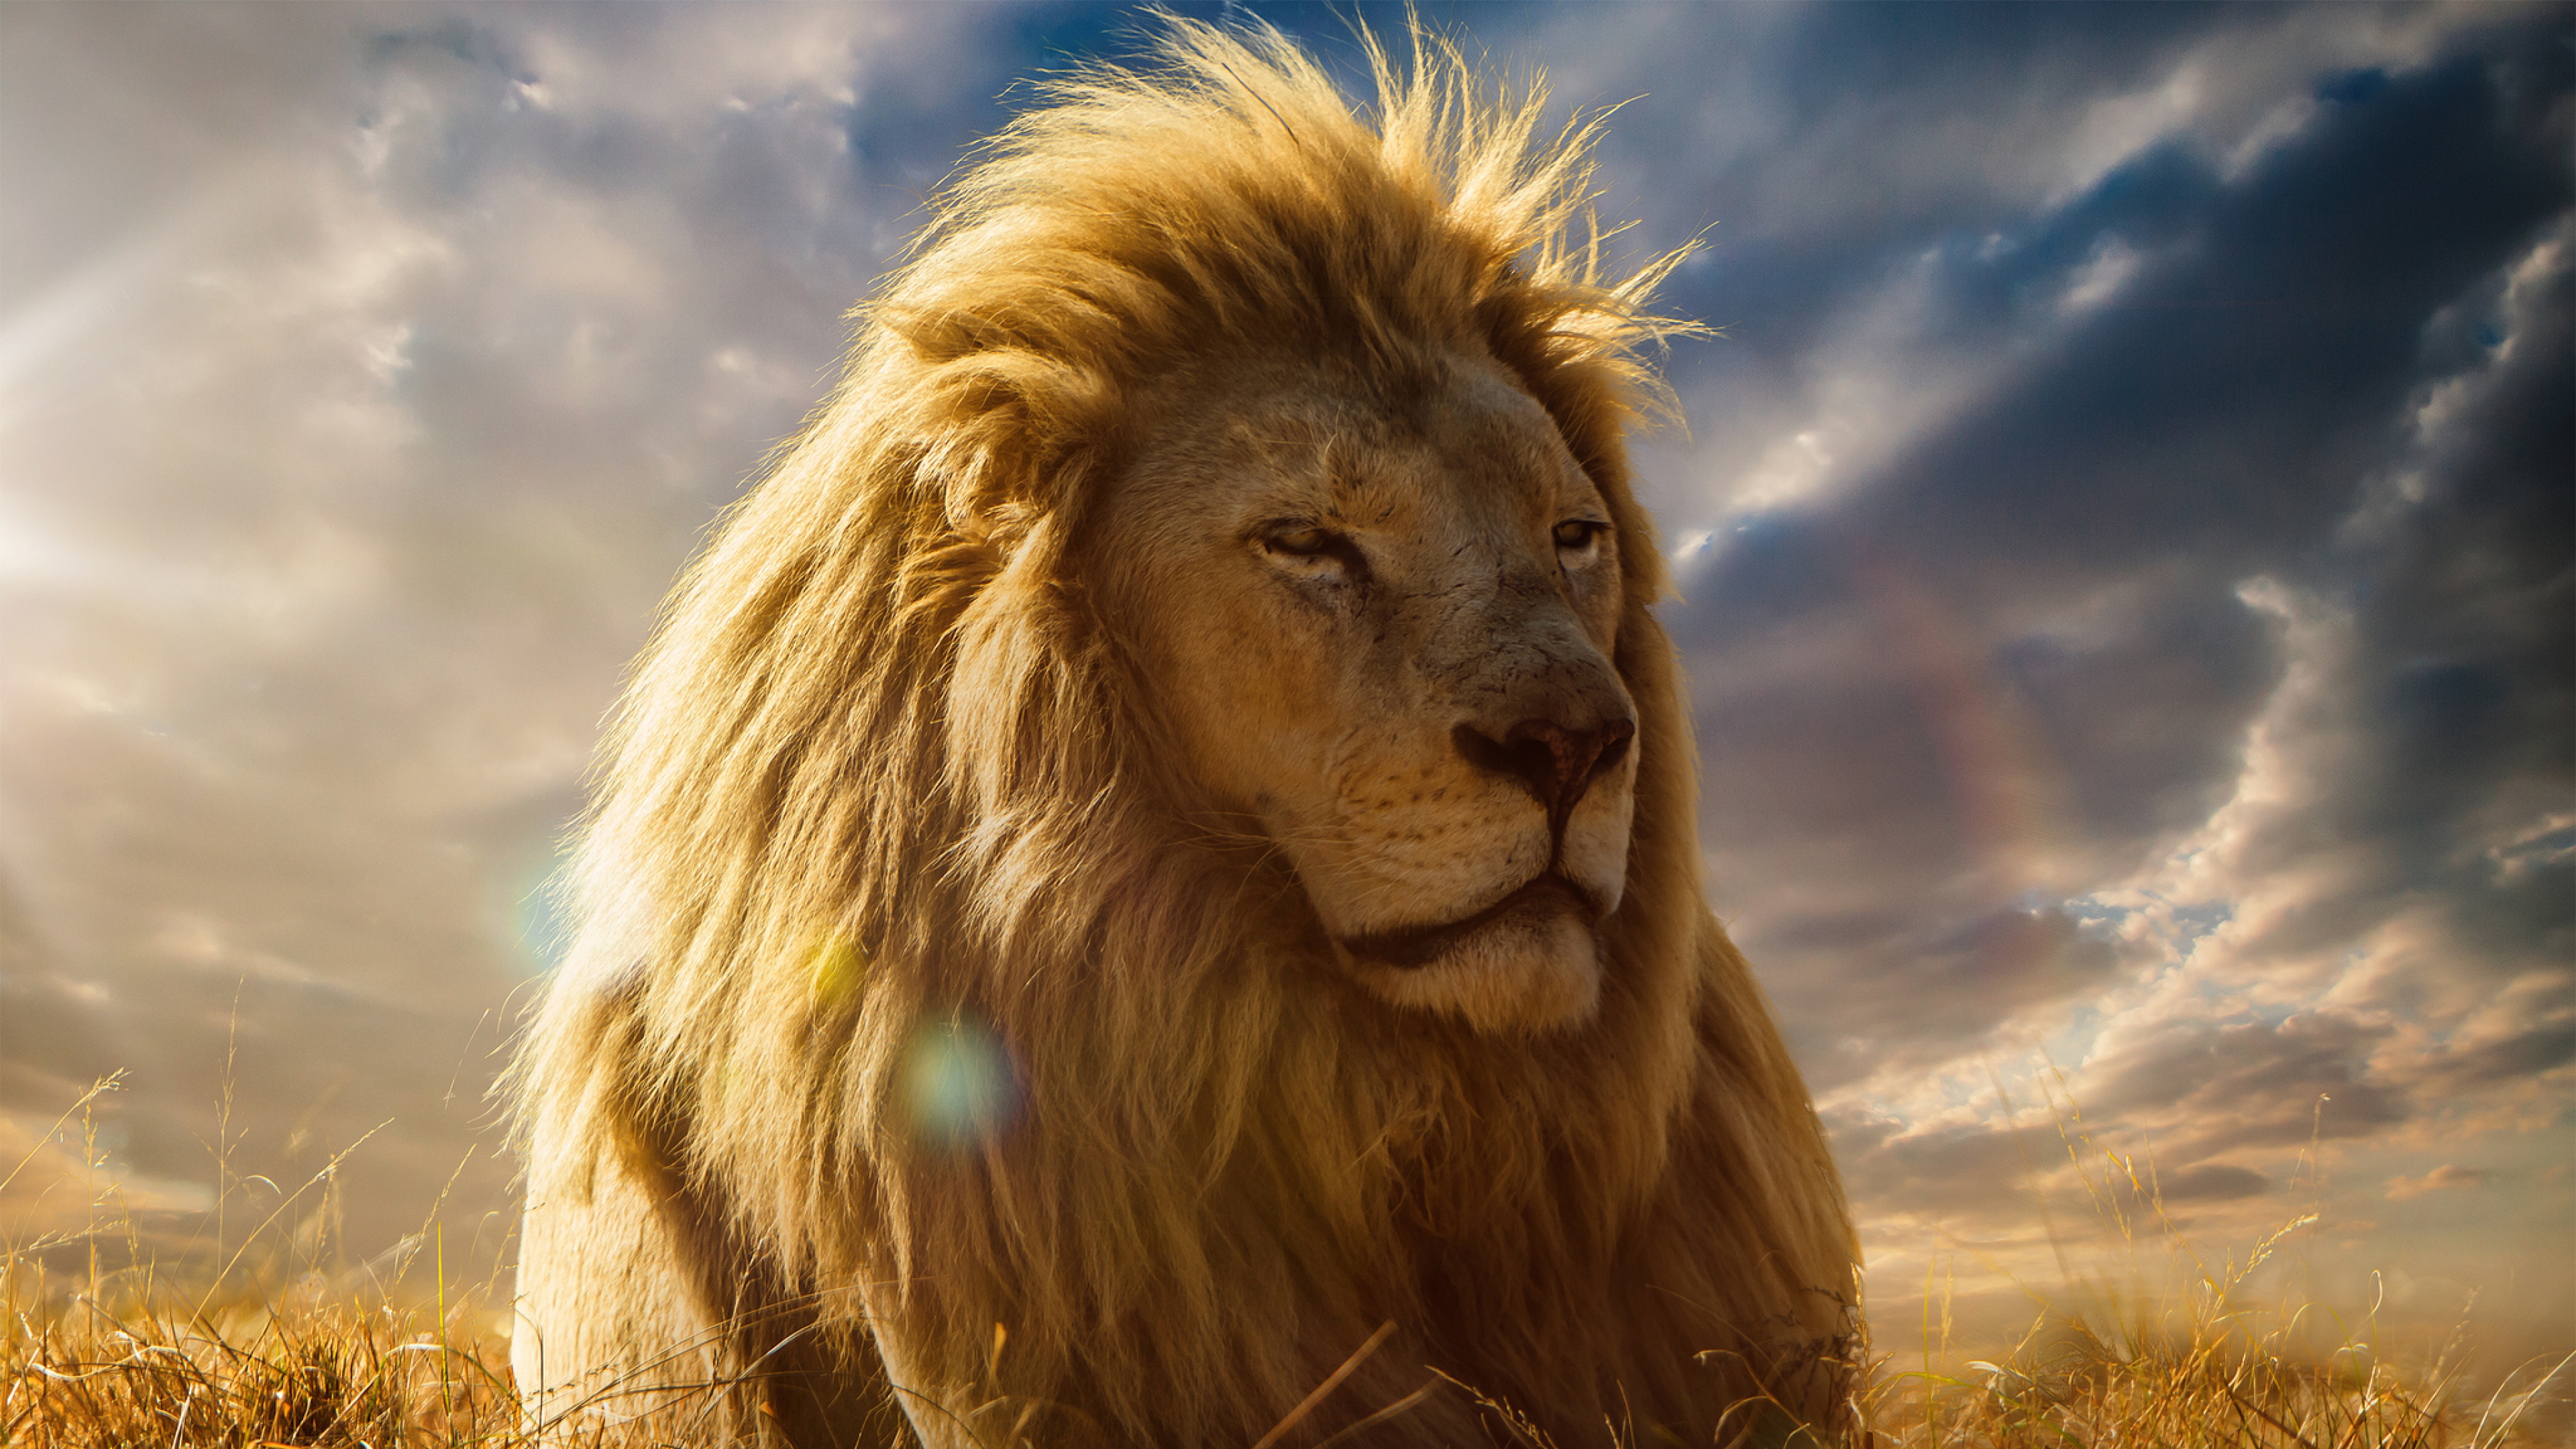 狮子, 头发, 马赛马的狮子, 野生动物, 猫科 壁纸 3840x2160 允许